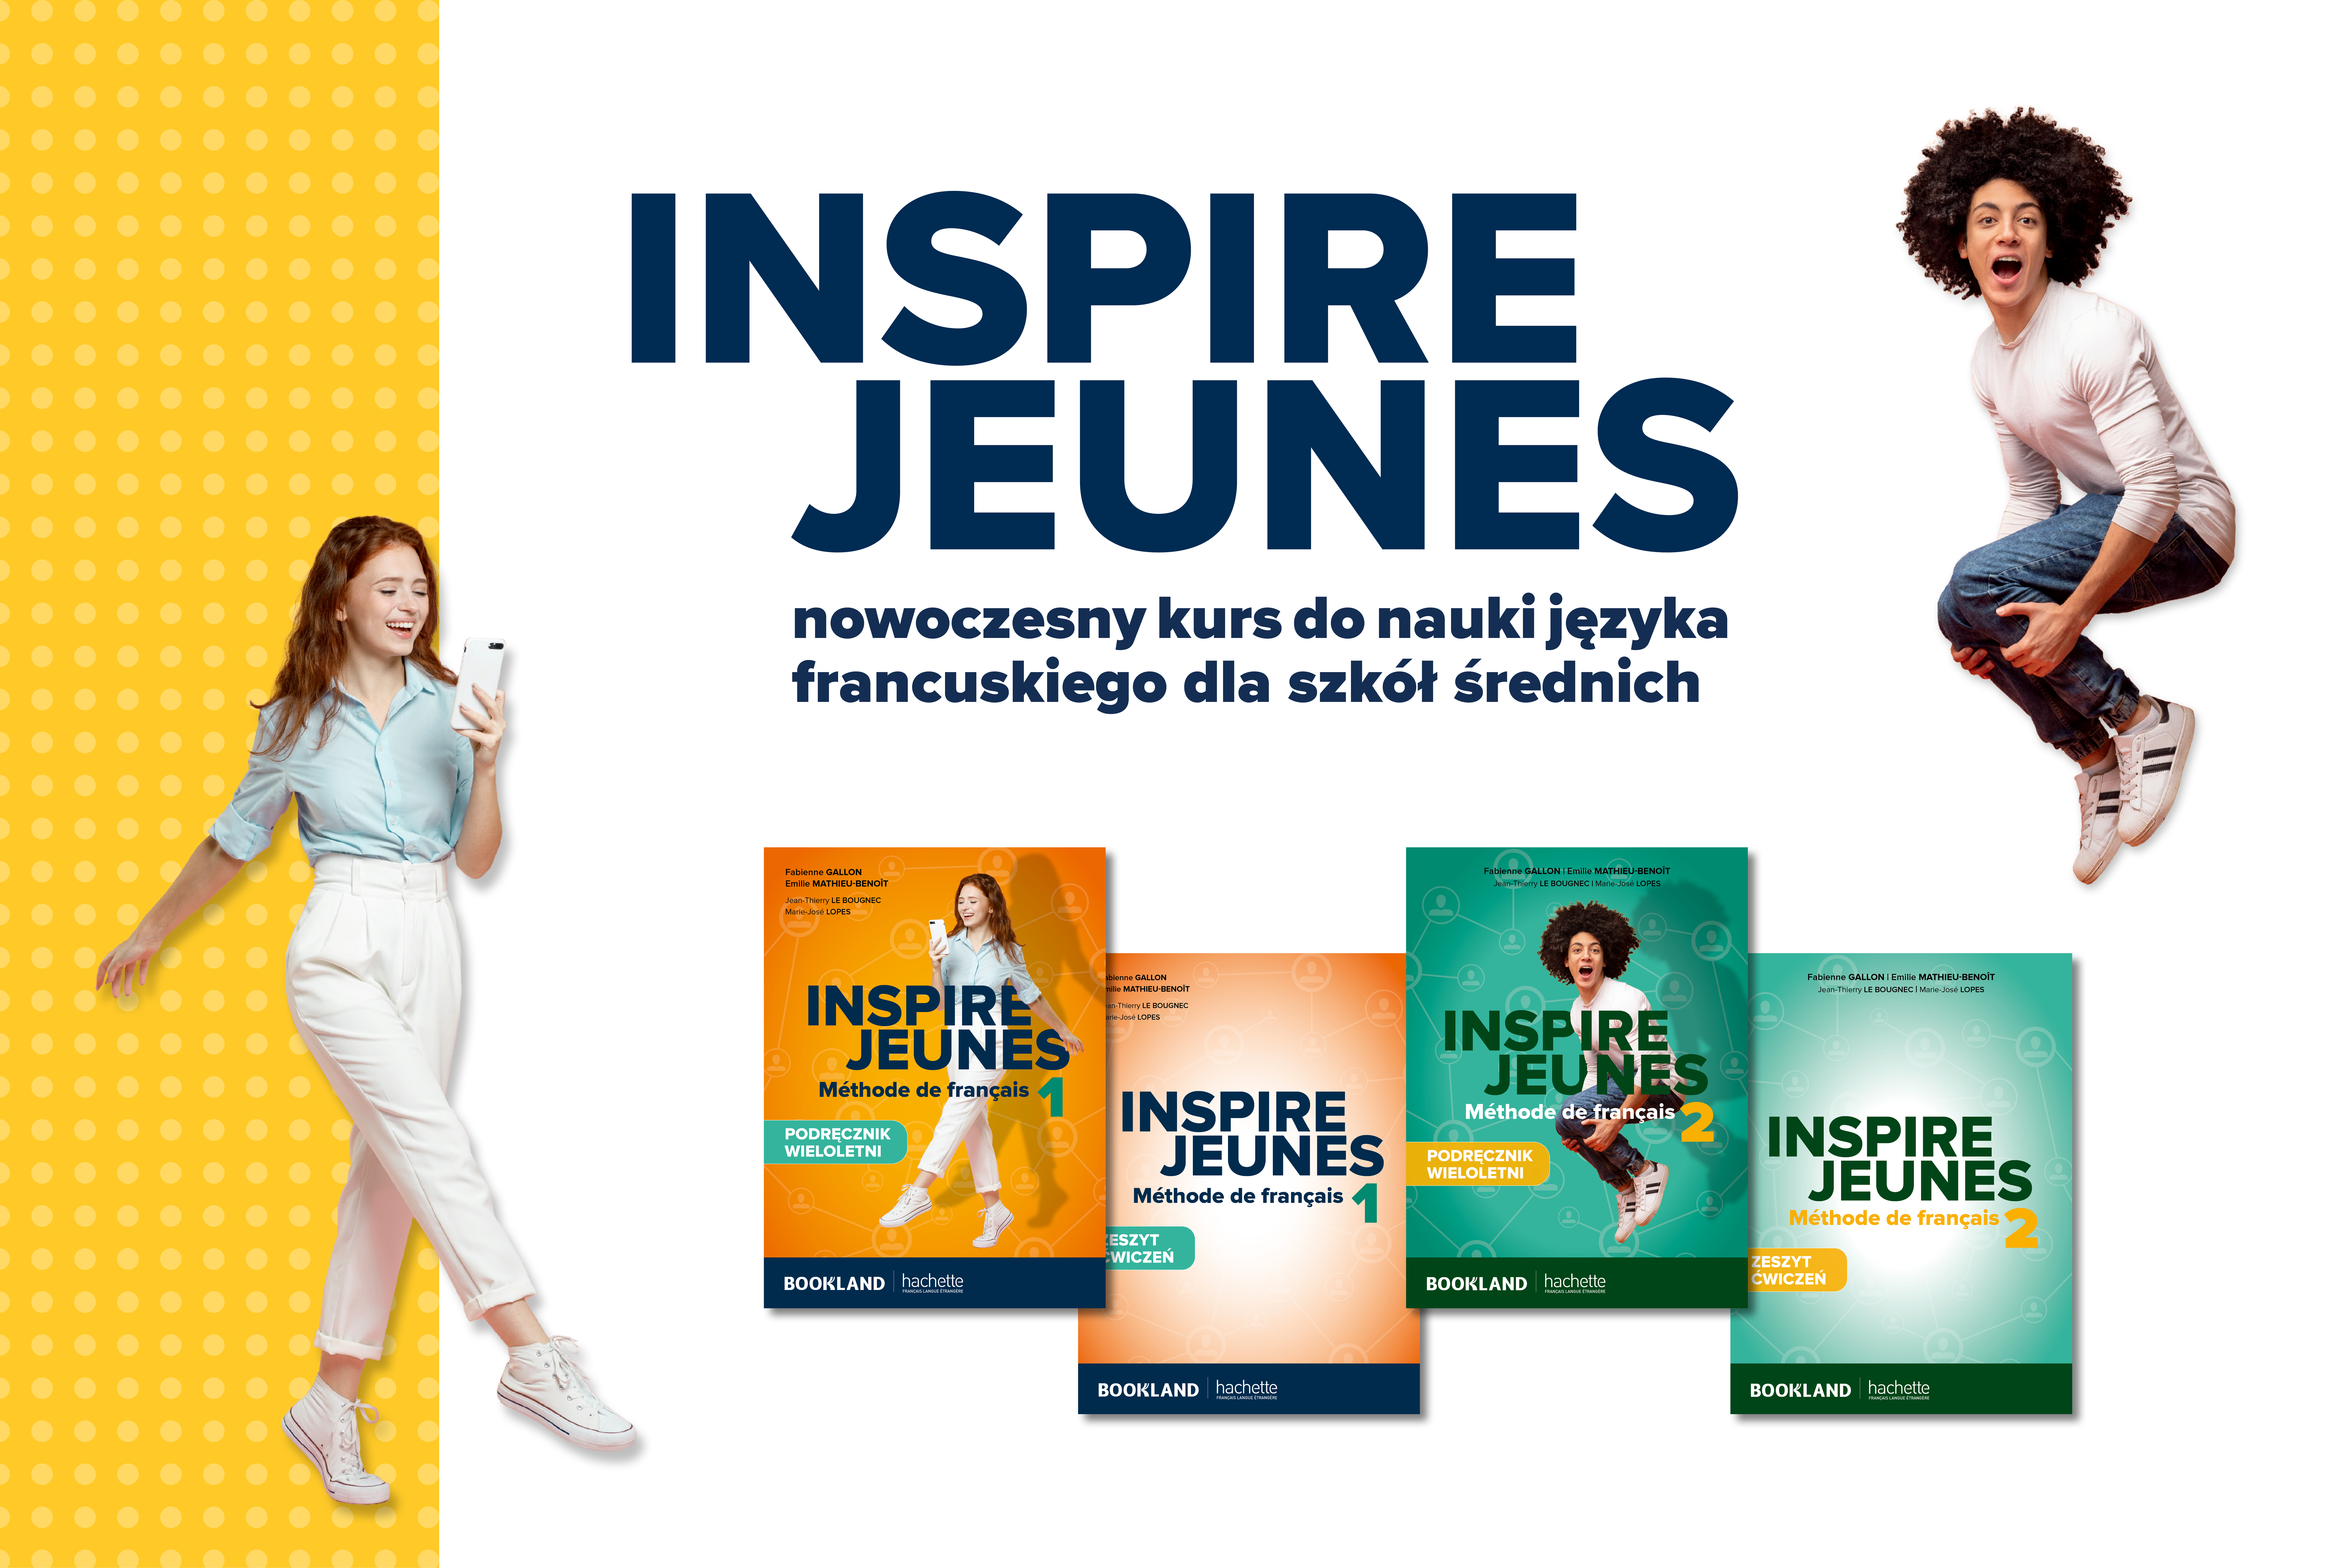 Inspire Jeunes - nowy kurs języka francuskiego dla szkół średnich